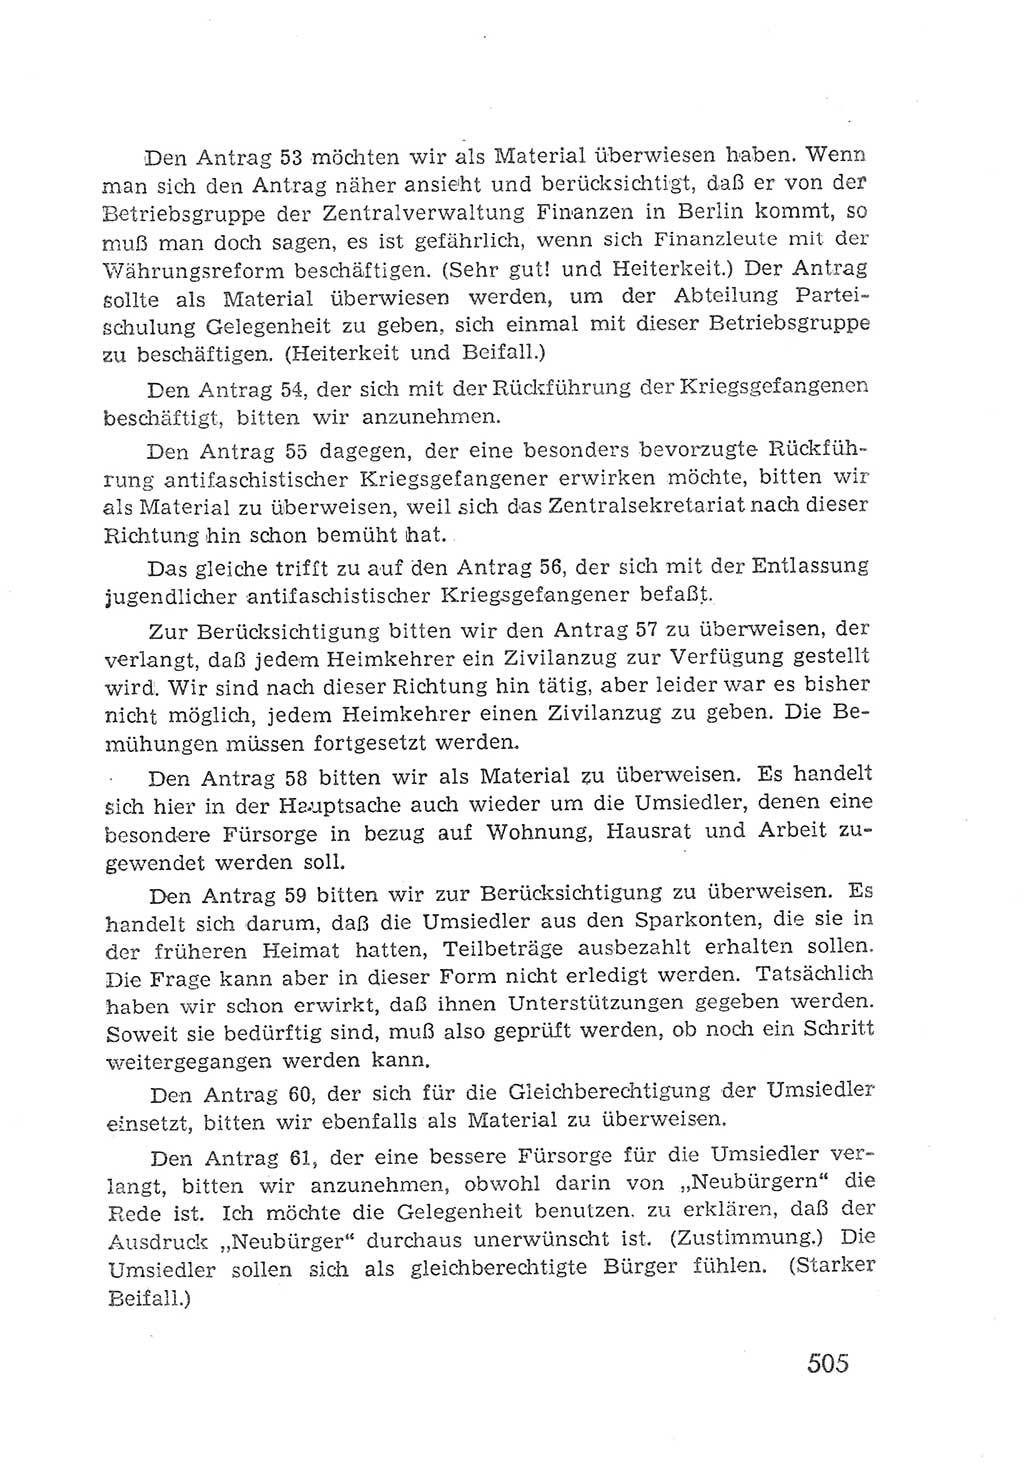 Protokoll der Verhandlungen des 2. Parteitages der Sozialistischen Einheitspartei Deutschlands (SED) [Sowjetische Besatzungszone (SBZ) Deutschlands] 1947, Seite 505 (Prot. Verh. 2. PT SED SBZ Dtl. 1947, S. 505)